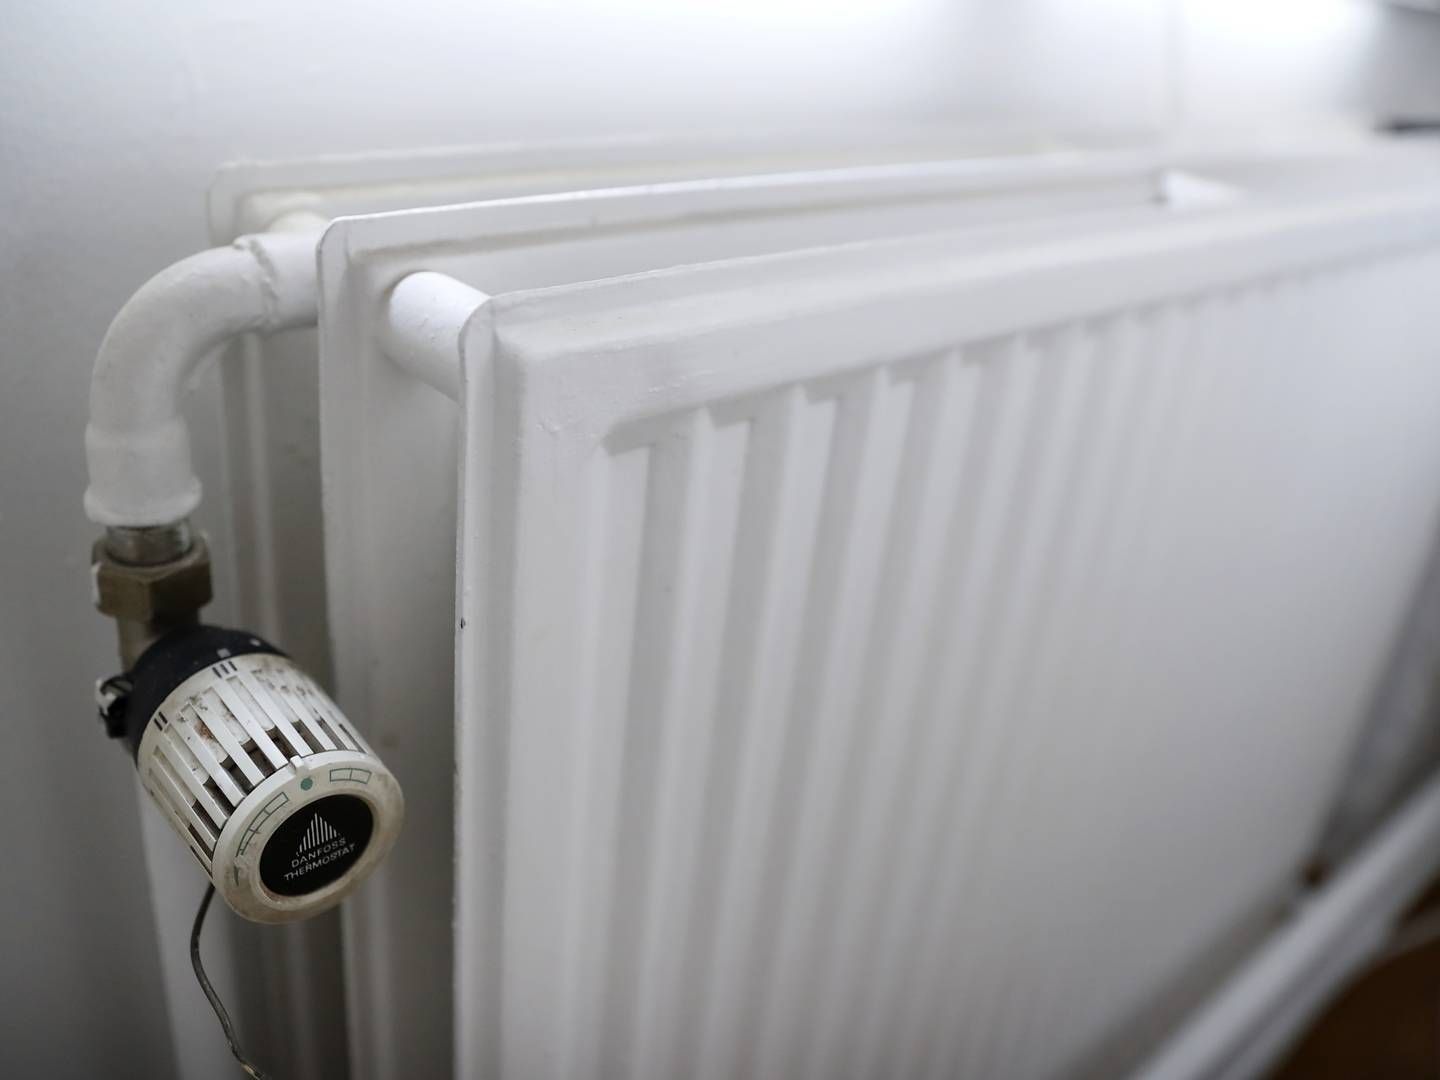 Regeringen vil udfase gasfyr til boligopvarmning. | Foto: Jens Dresling